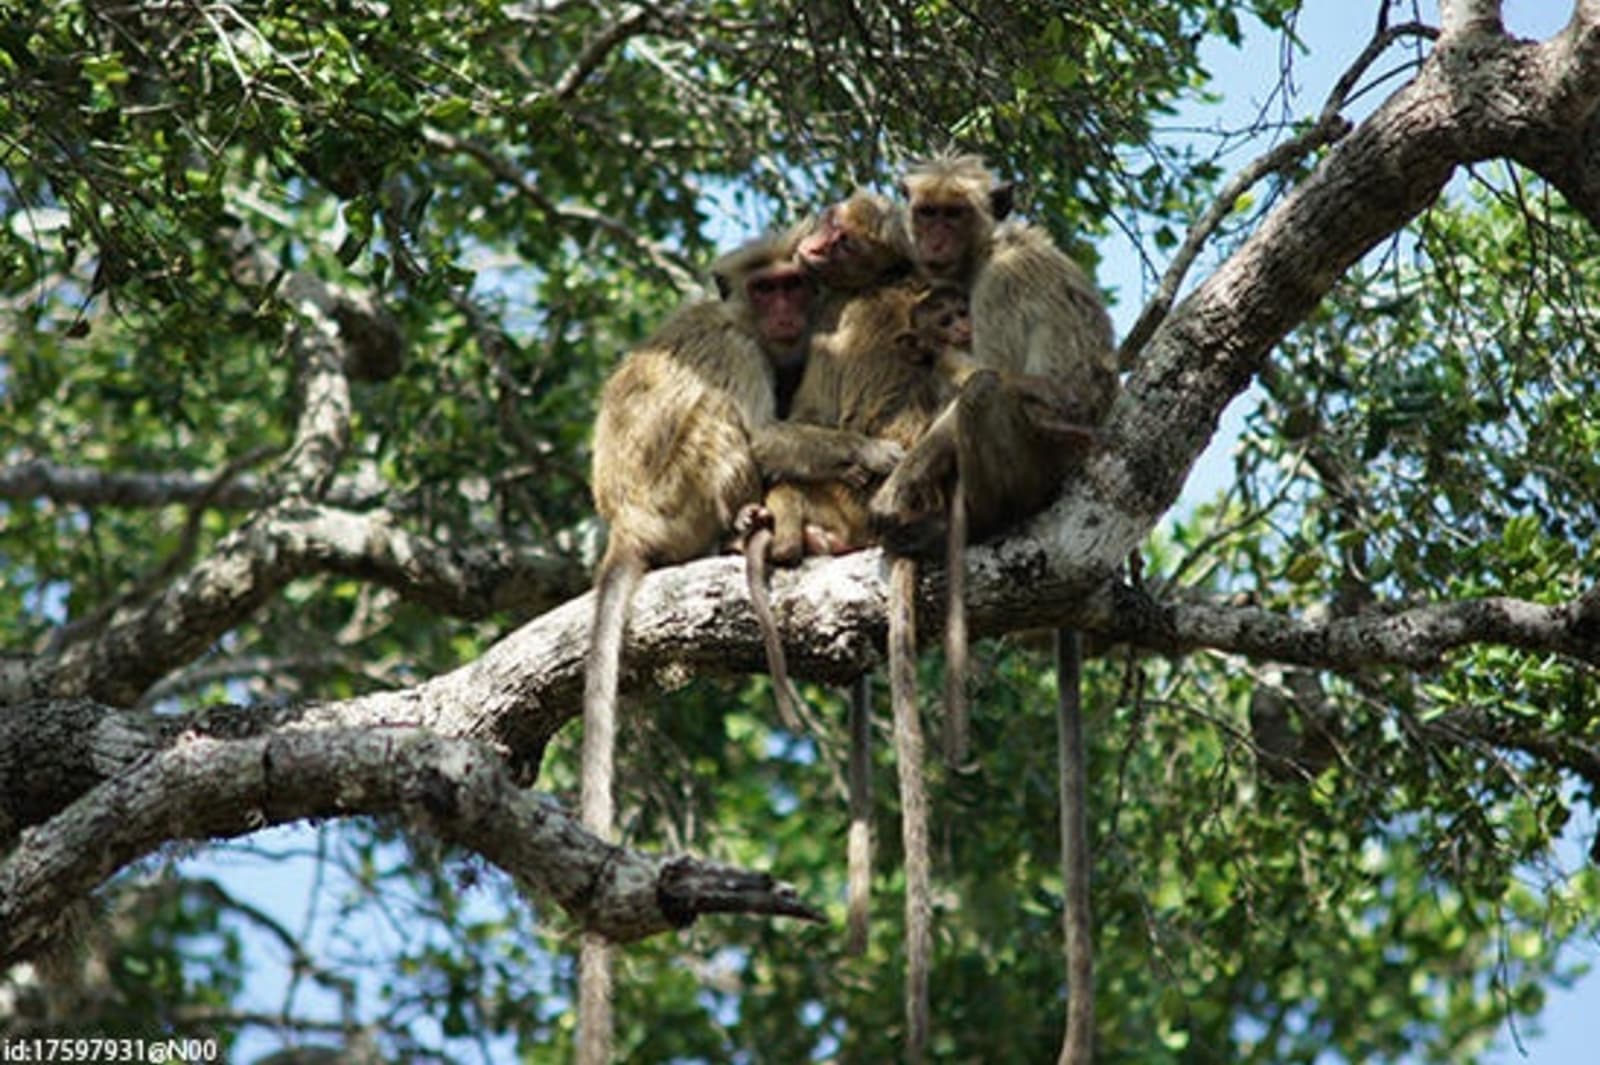 6-Monkeys-at-Yala-FLICKR-id17597931@N00.jpeg